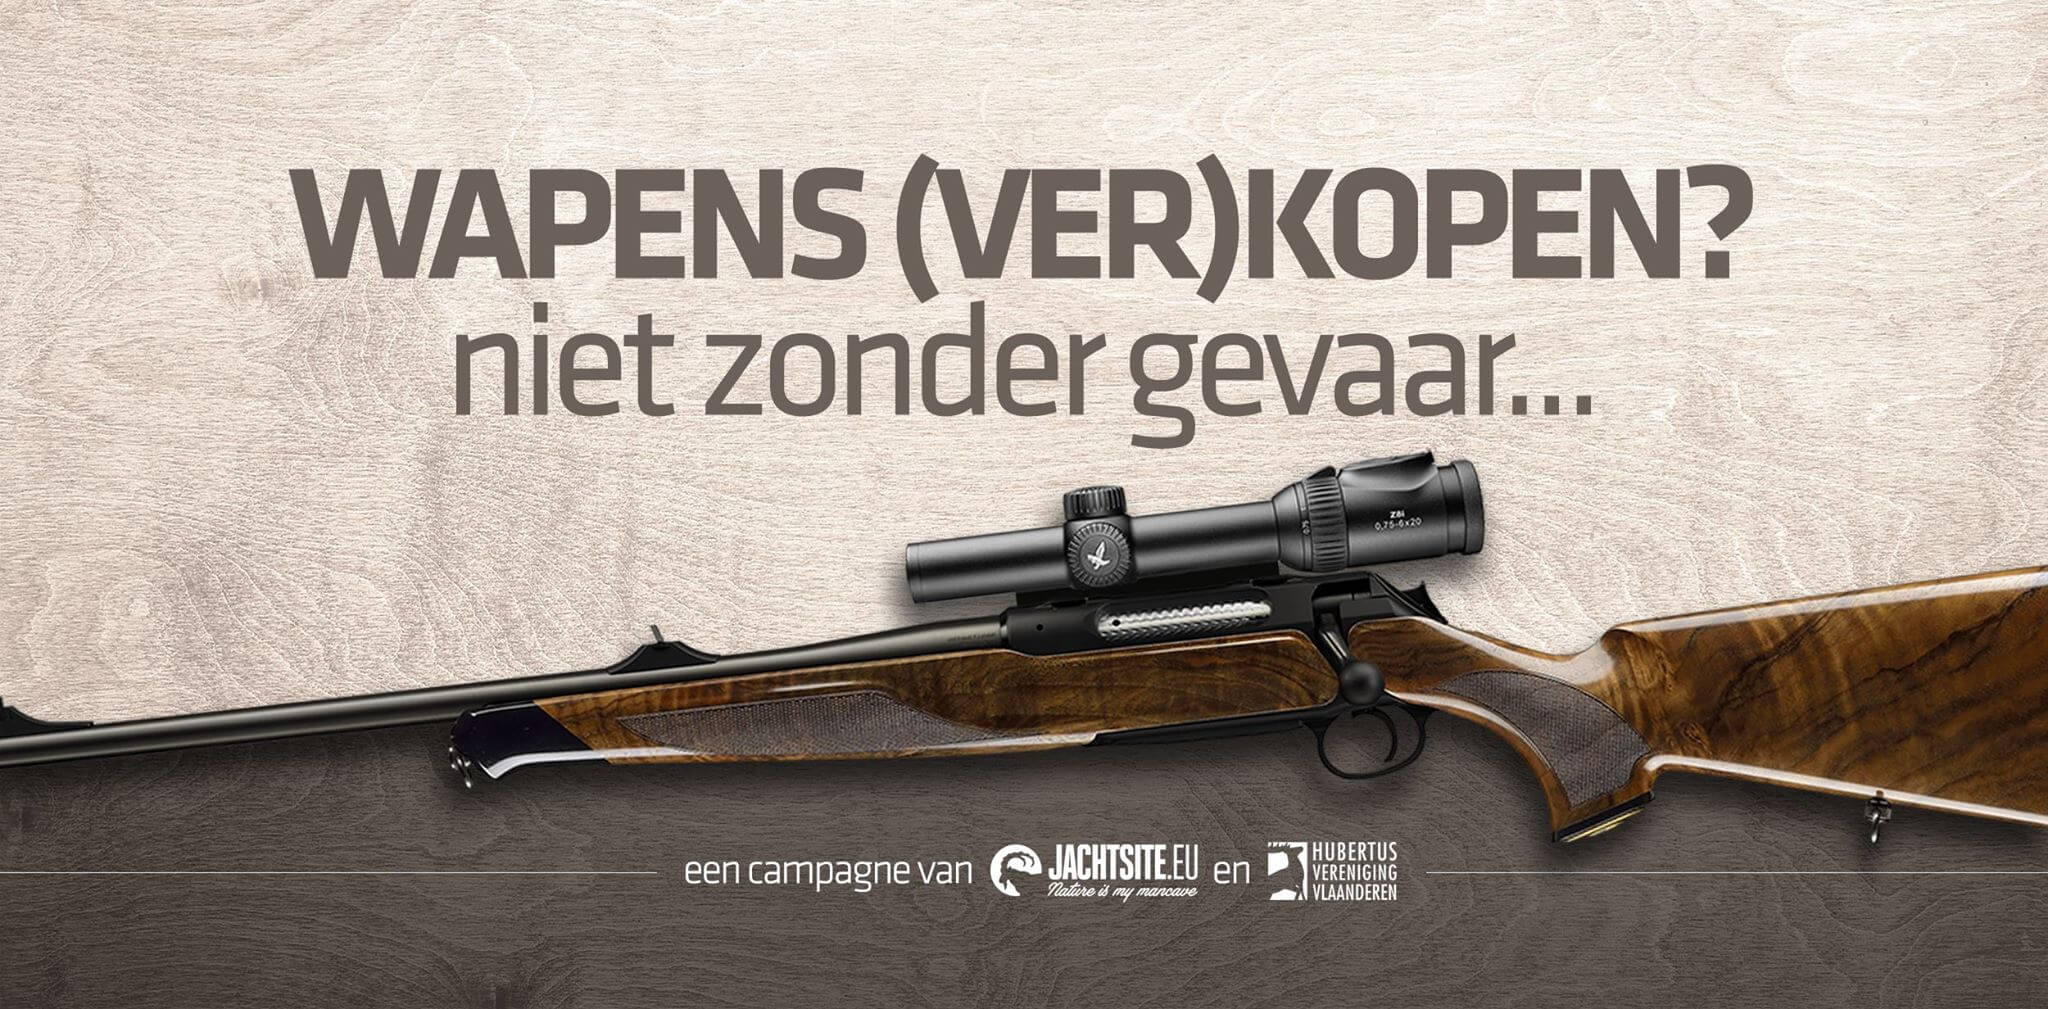 Complex vasthoudend liter Kwestie: mag ik een tweedehands wapen online verkopen? - Hubertus  Vereniging Vlaanderen